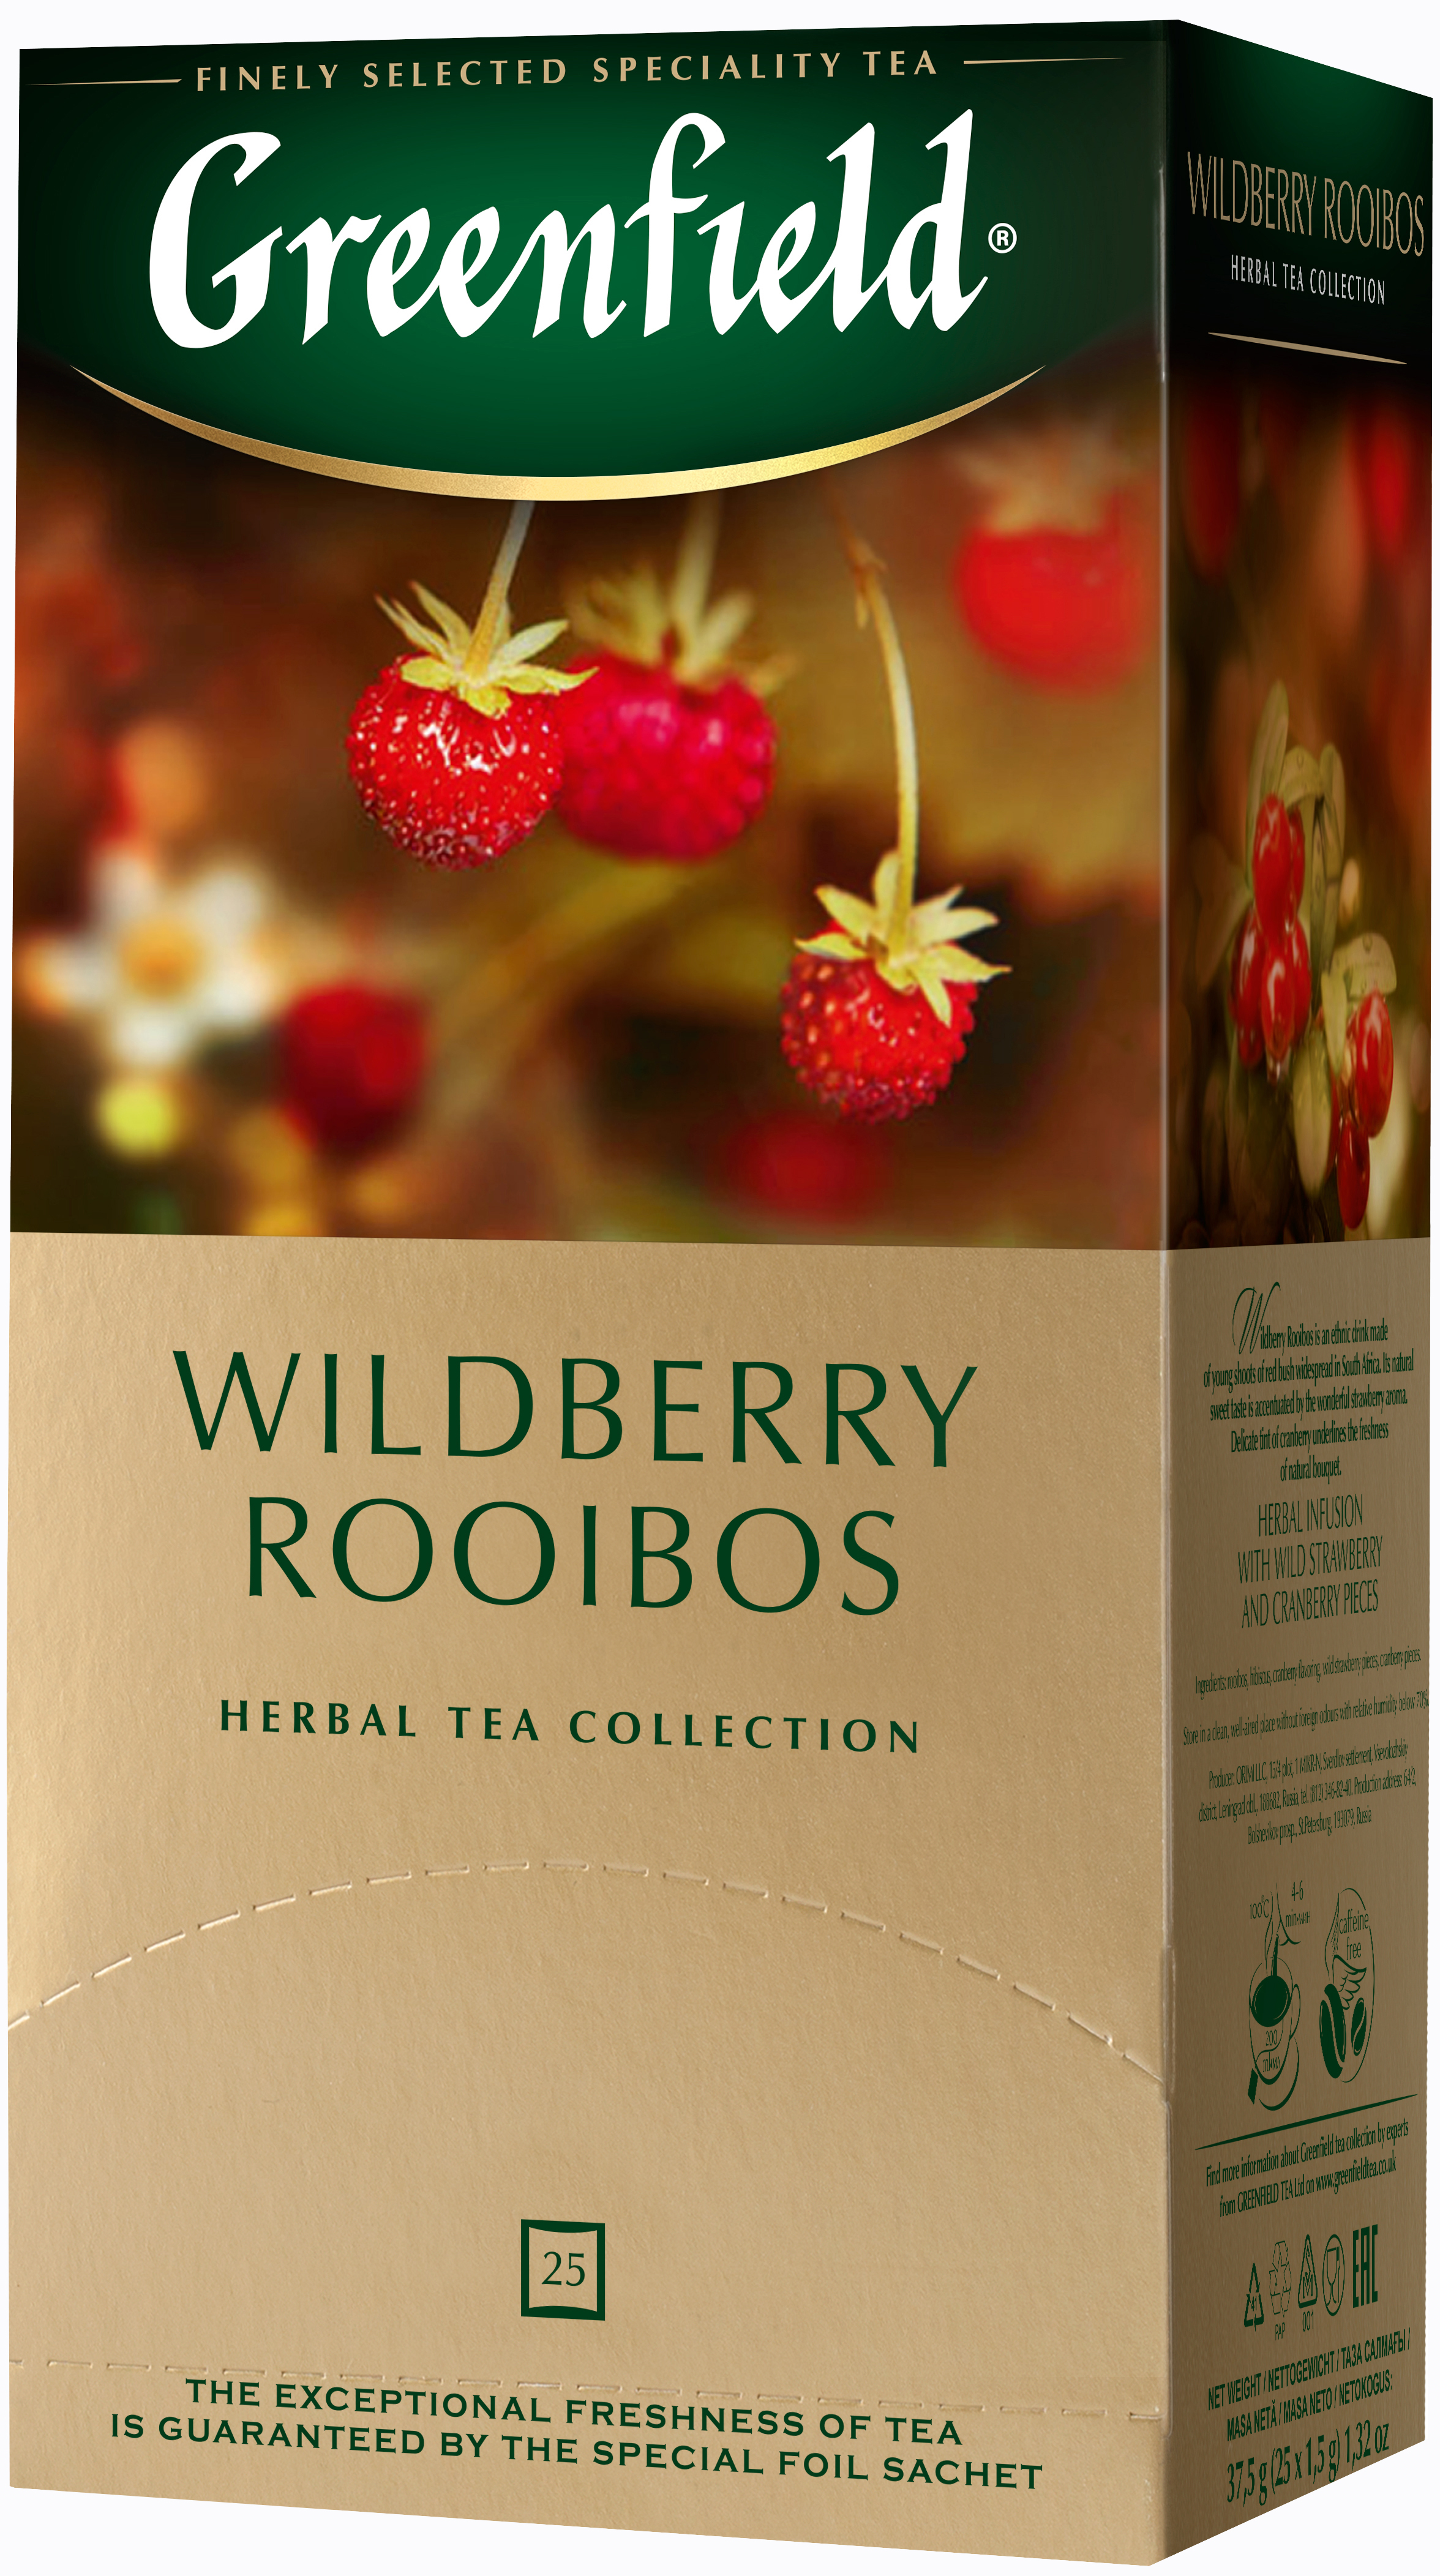 Greenfield Wildberry Rooibos Herbal Tea, 25 tea bags